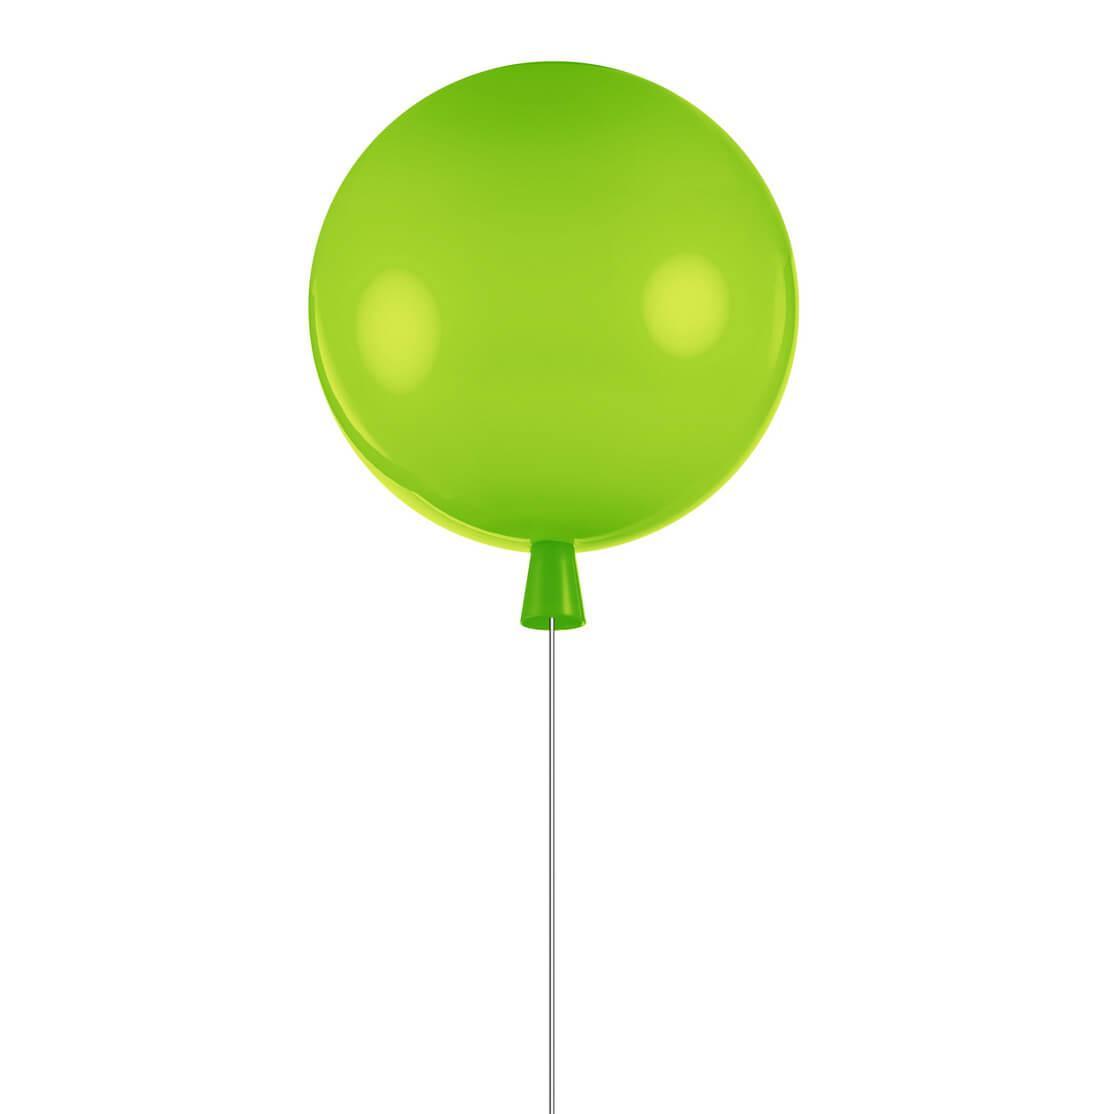 Потолочный светильник LOFT IT Balloon 5055C/L green